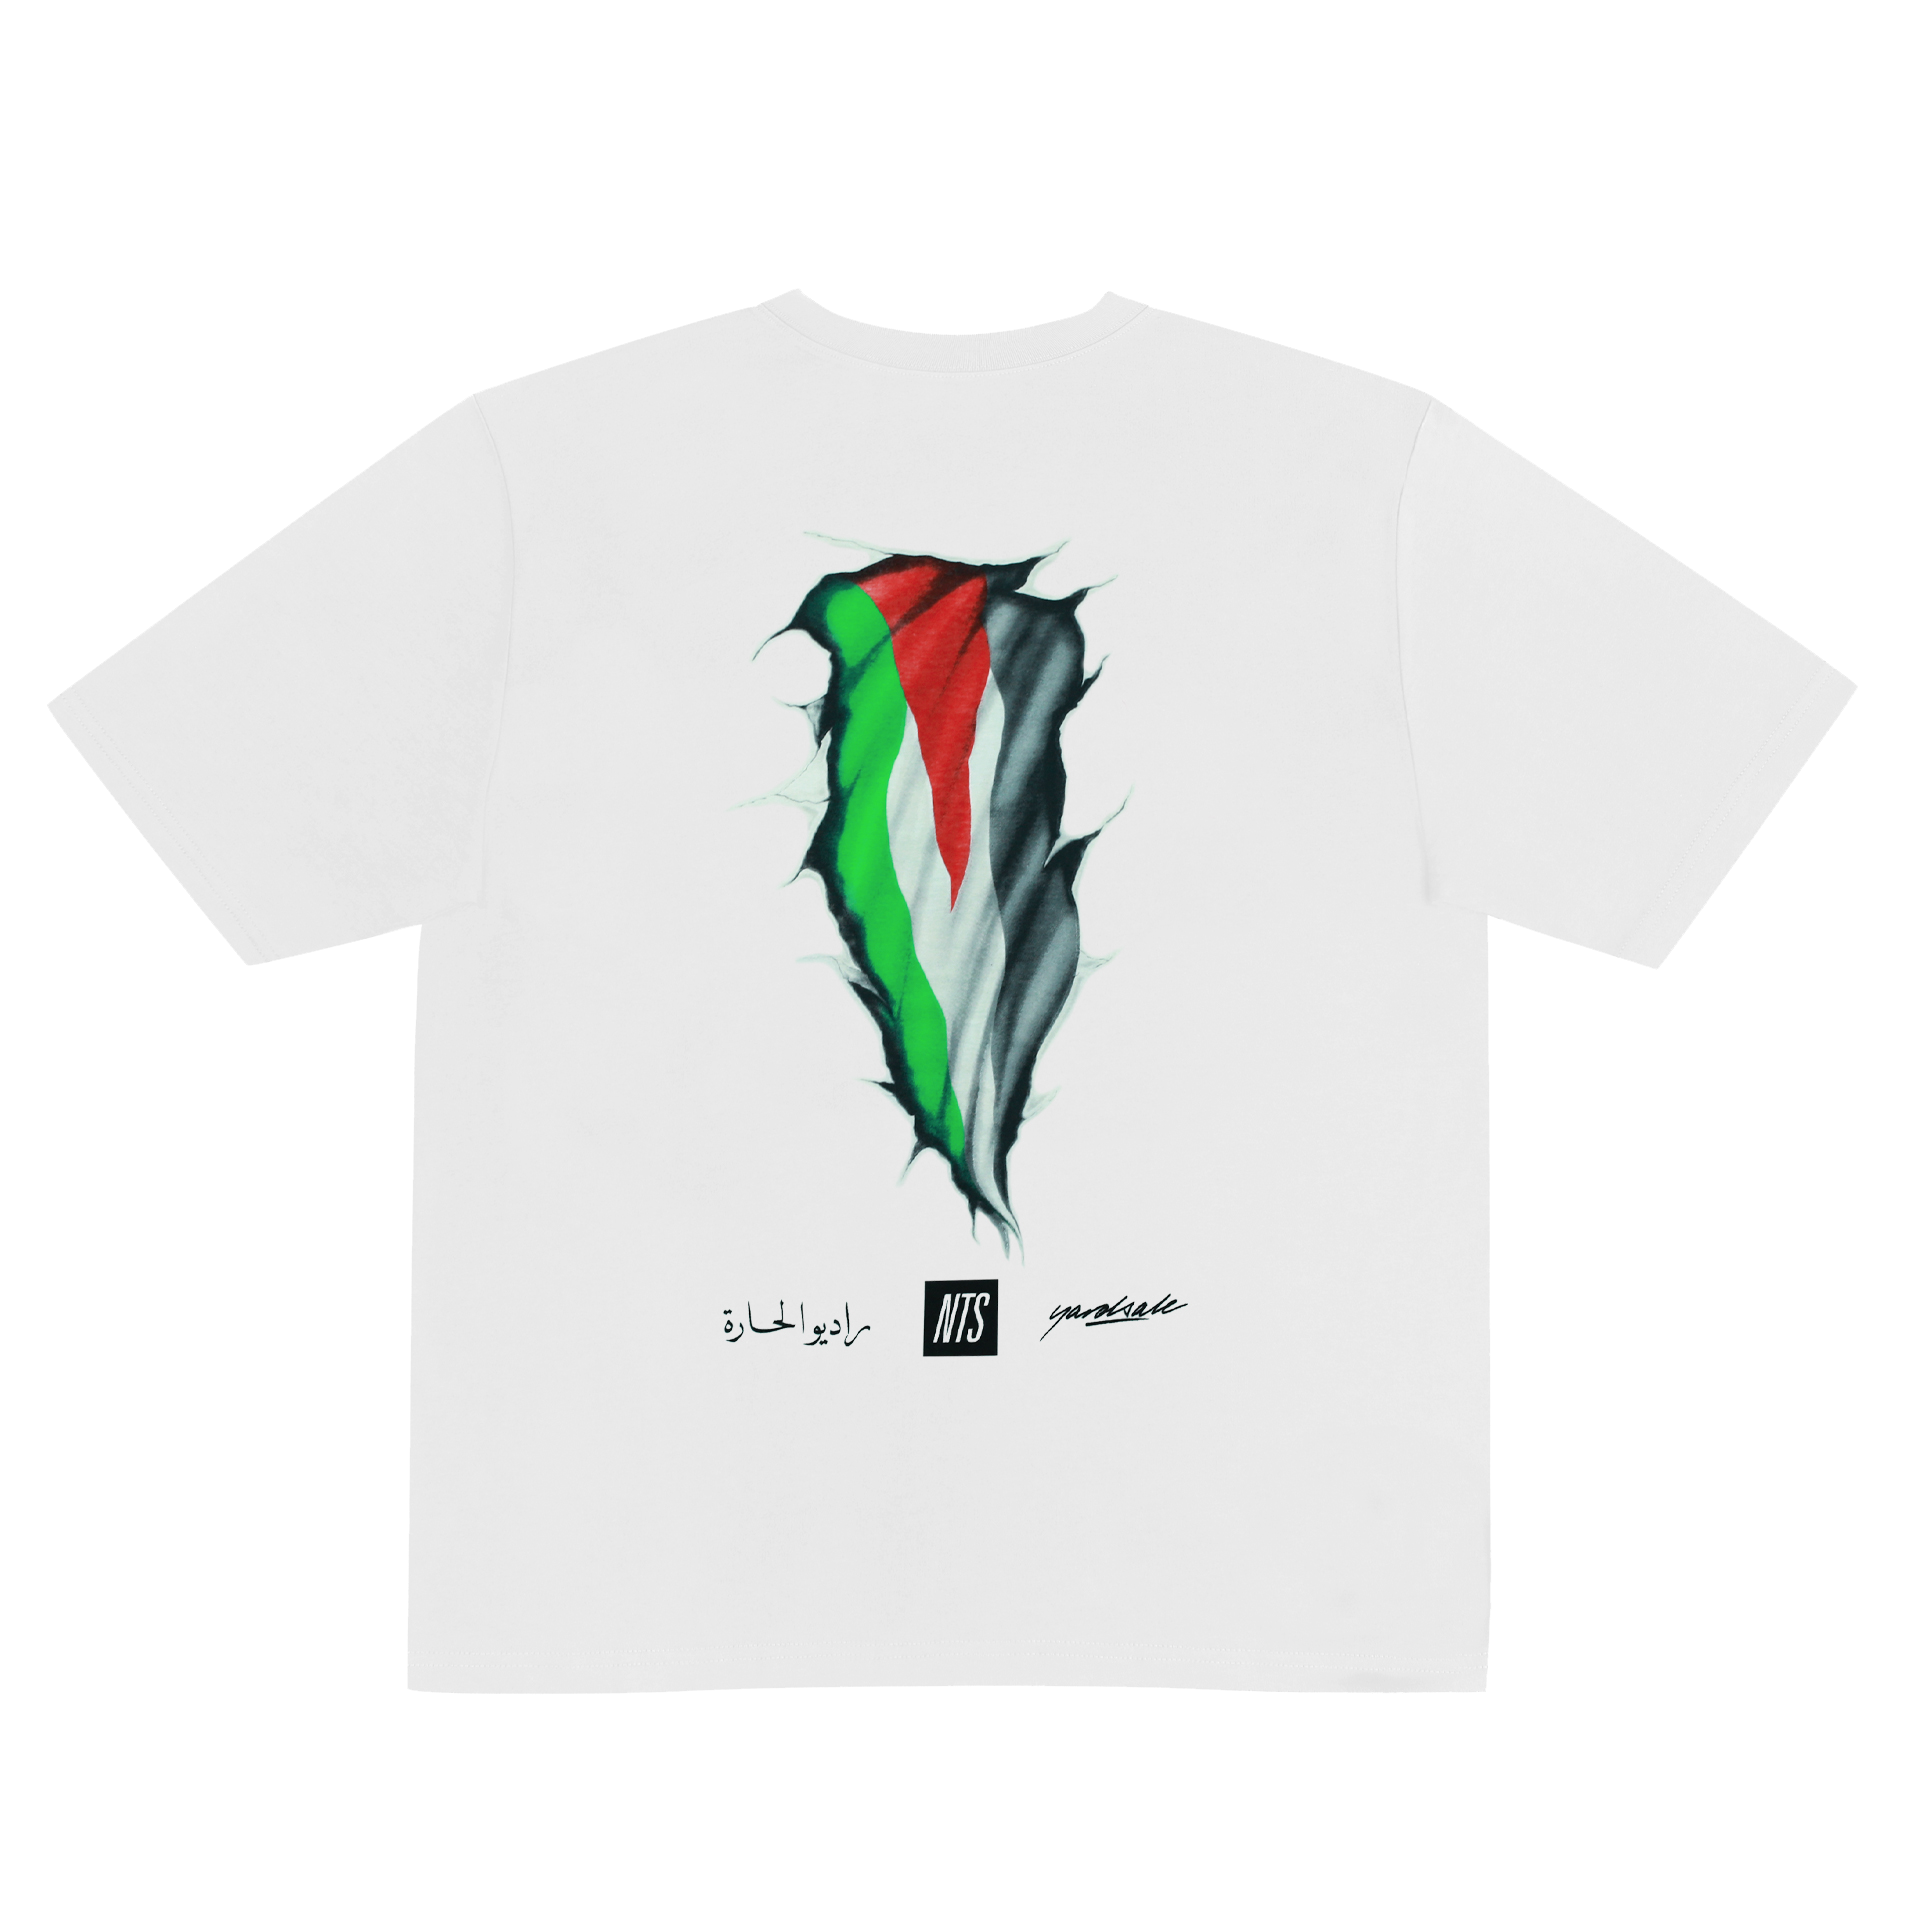 NTS RADIO - Free Palestine T-Shirt